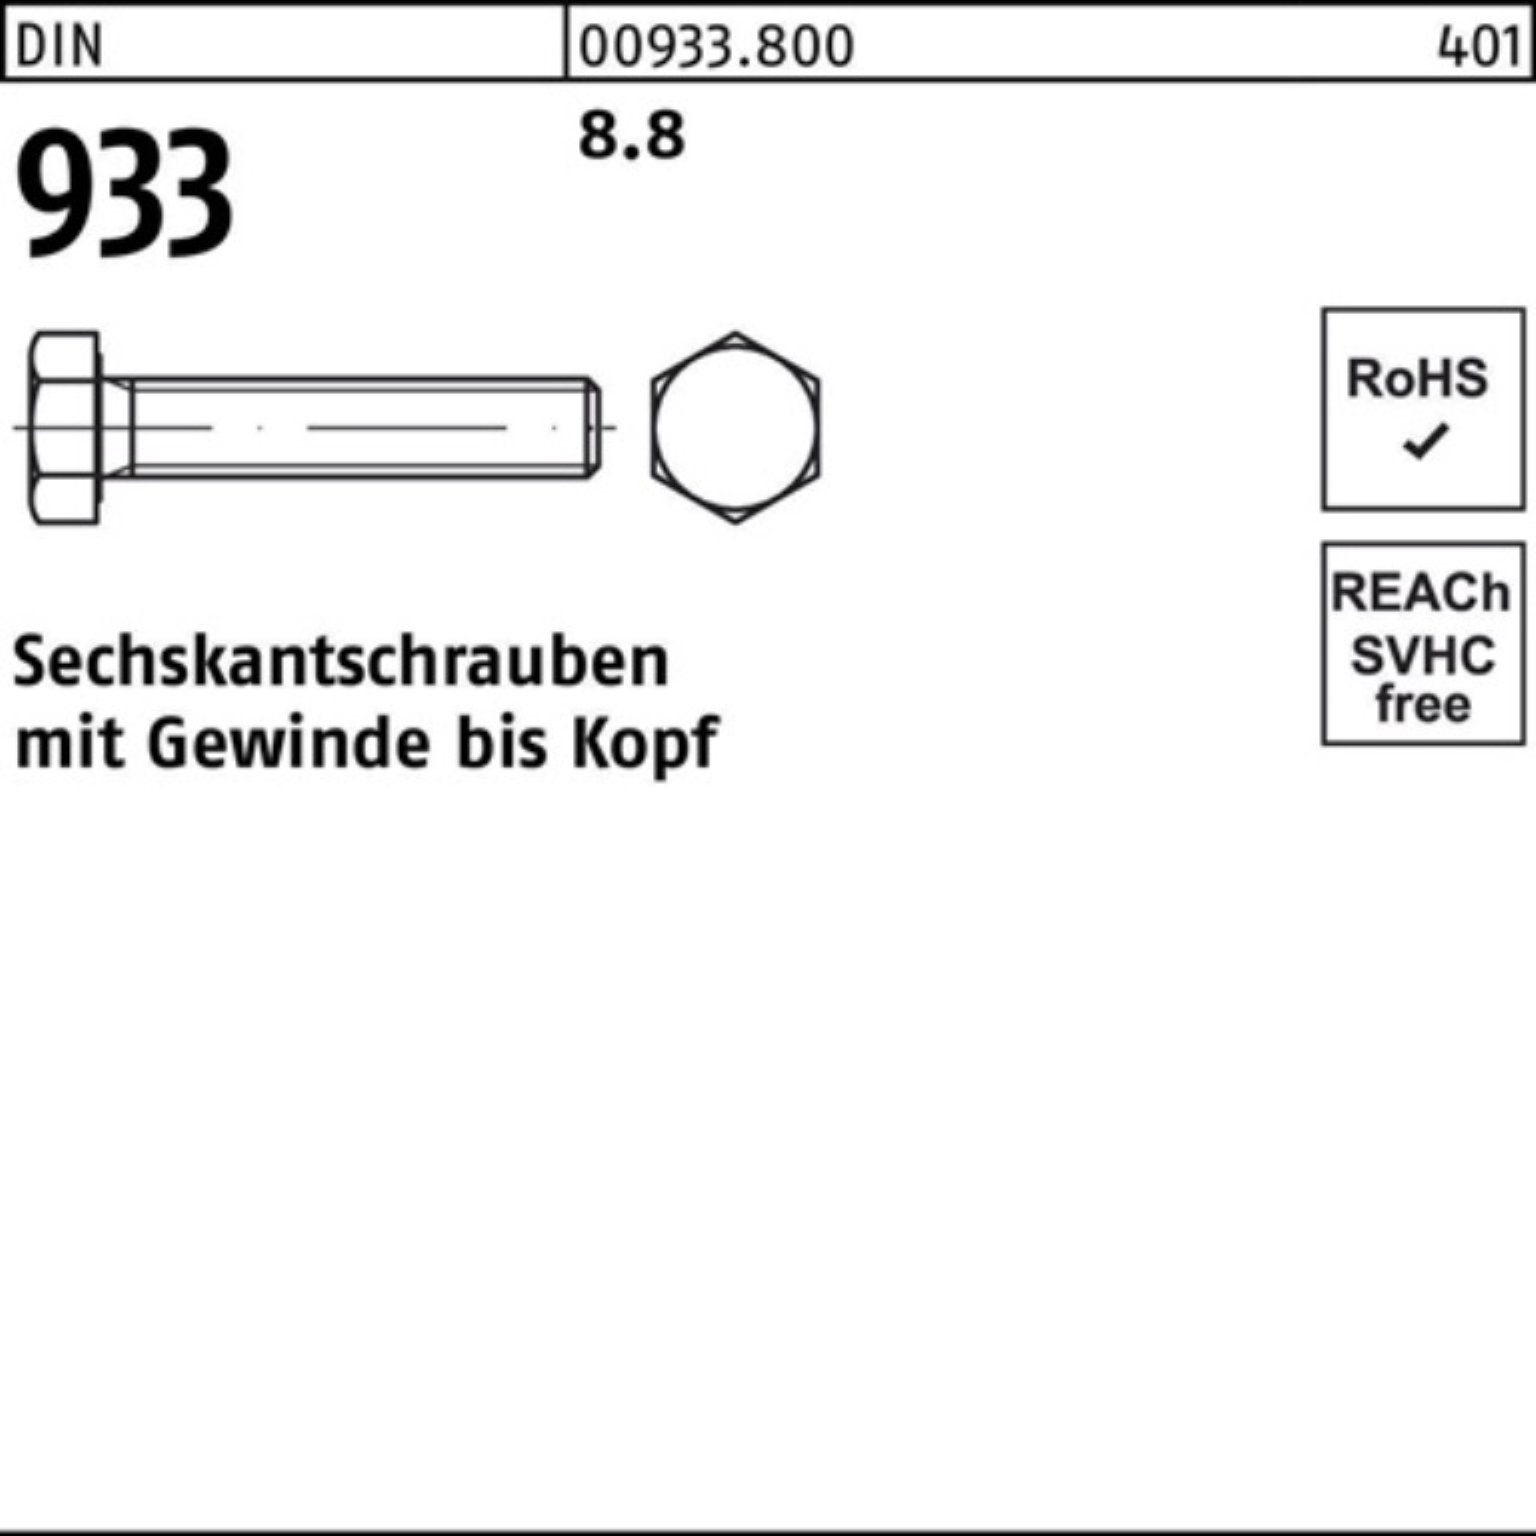 8.8 DIN Sechskantschraube Pack 933 Reyher Stück 50 DIN Sechskantschraube 200er 933 M5x VG 200